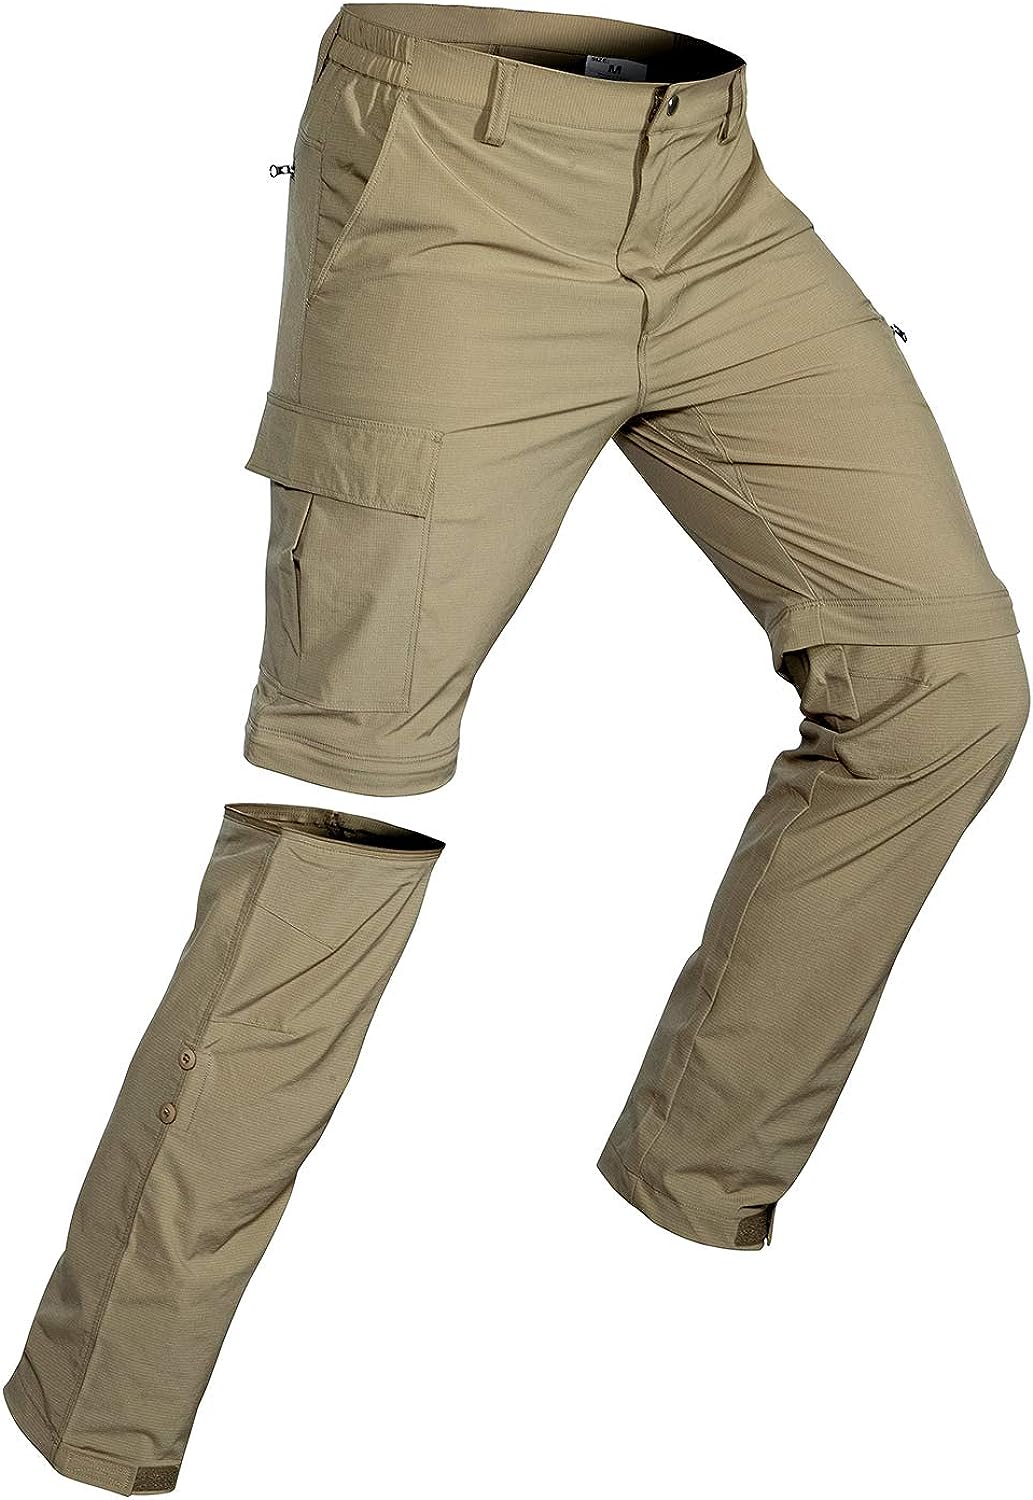 Men's Convertible Hiking Pants Quick Dry Lightweight Zip Off Pants